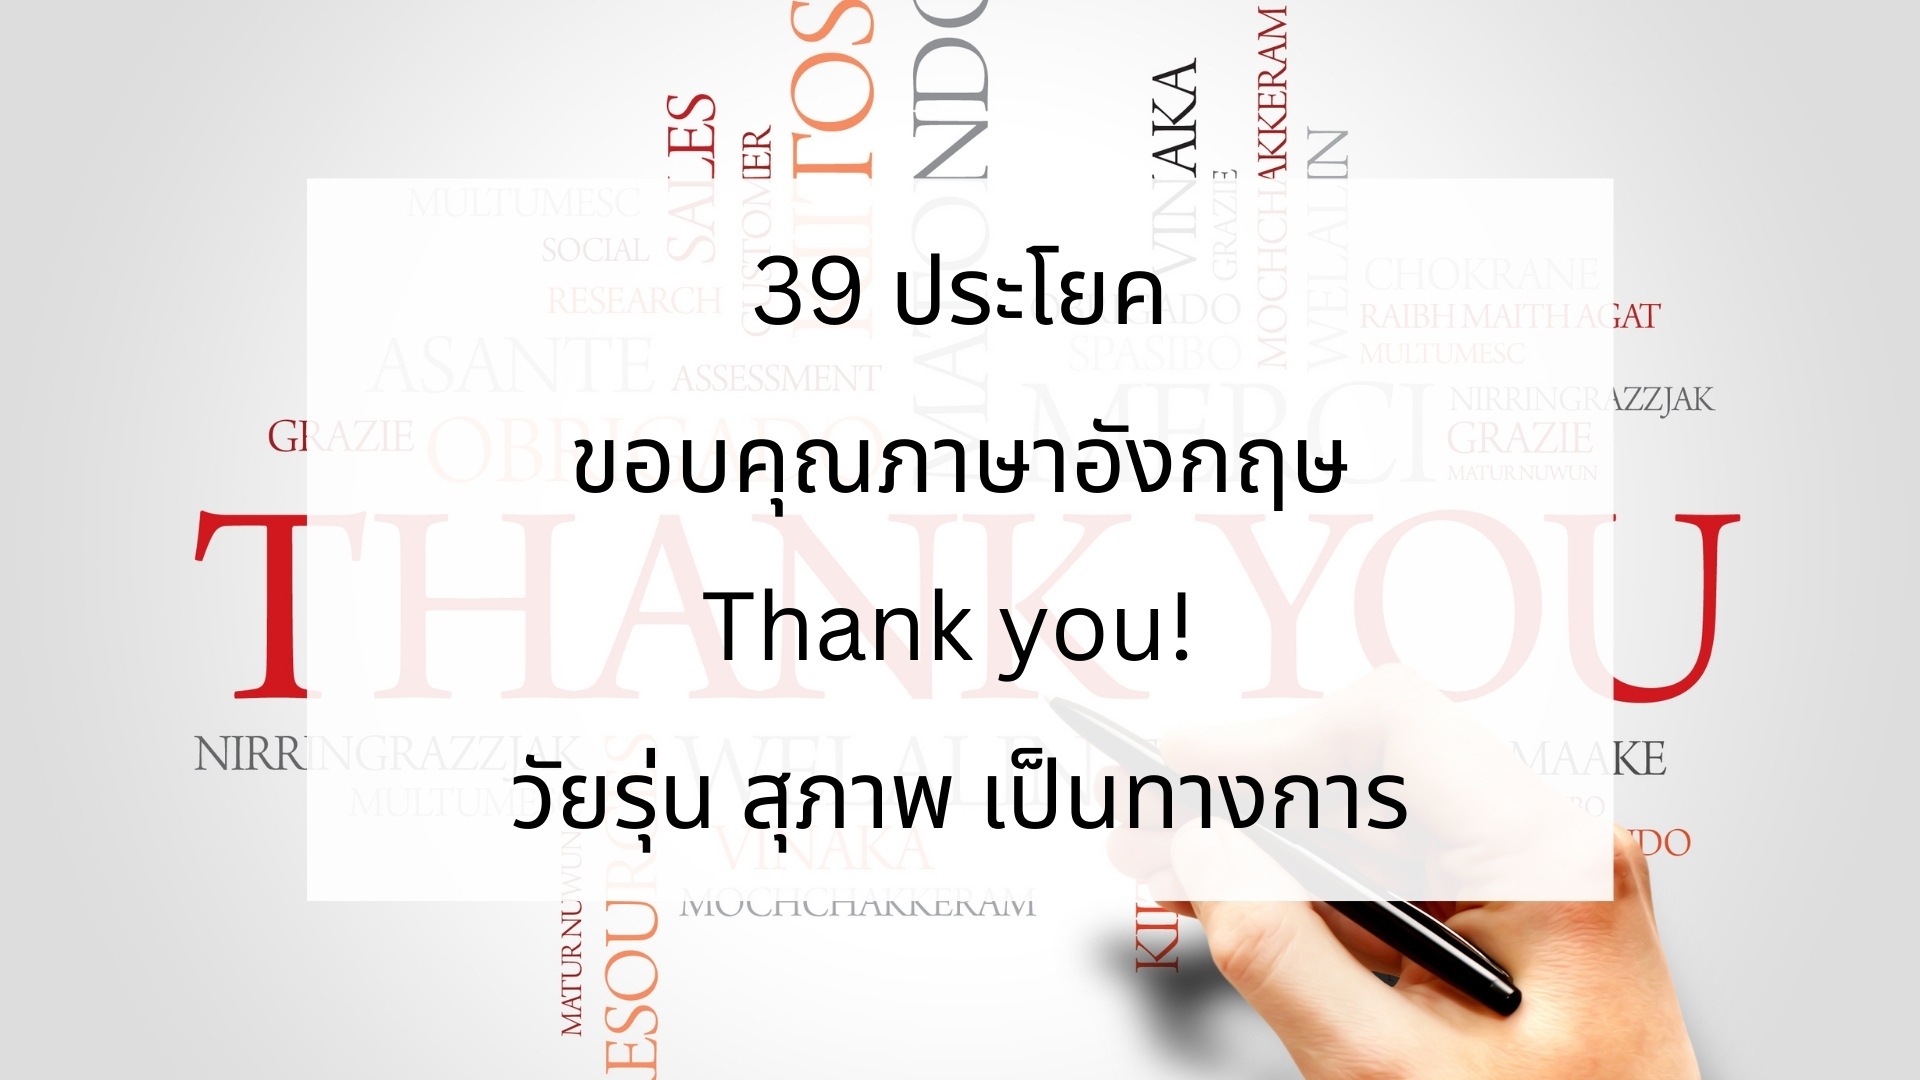 39 ประโยคขอบคุณภาษาอังกฤษ Thank You! วัยรุ่น สุภาพ เป็นทางการ – Bestkru